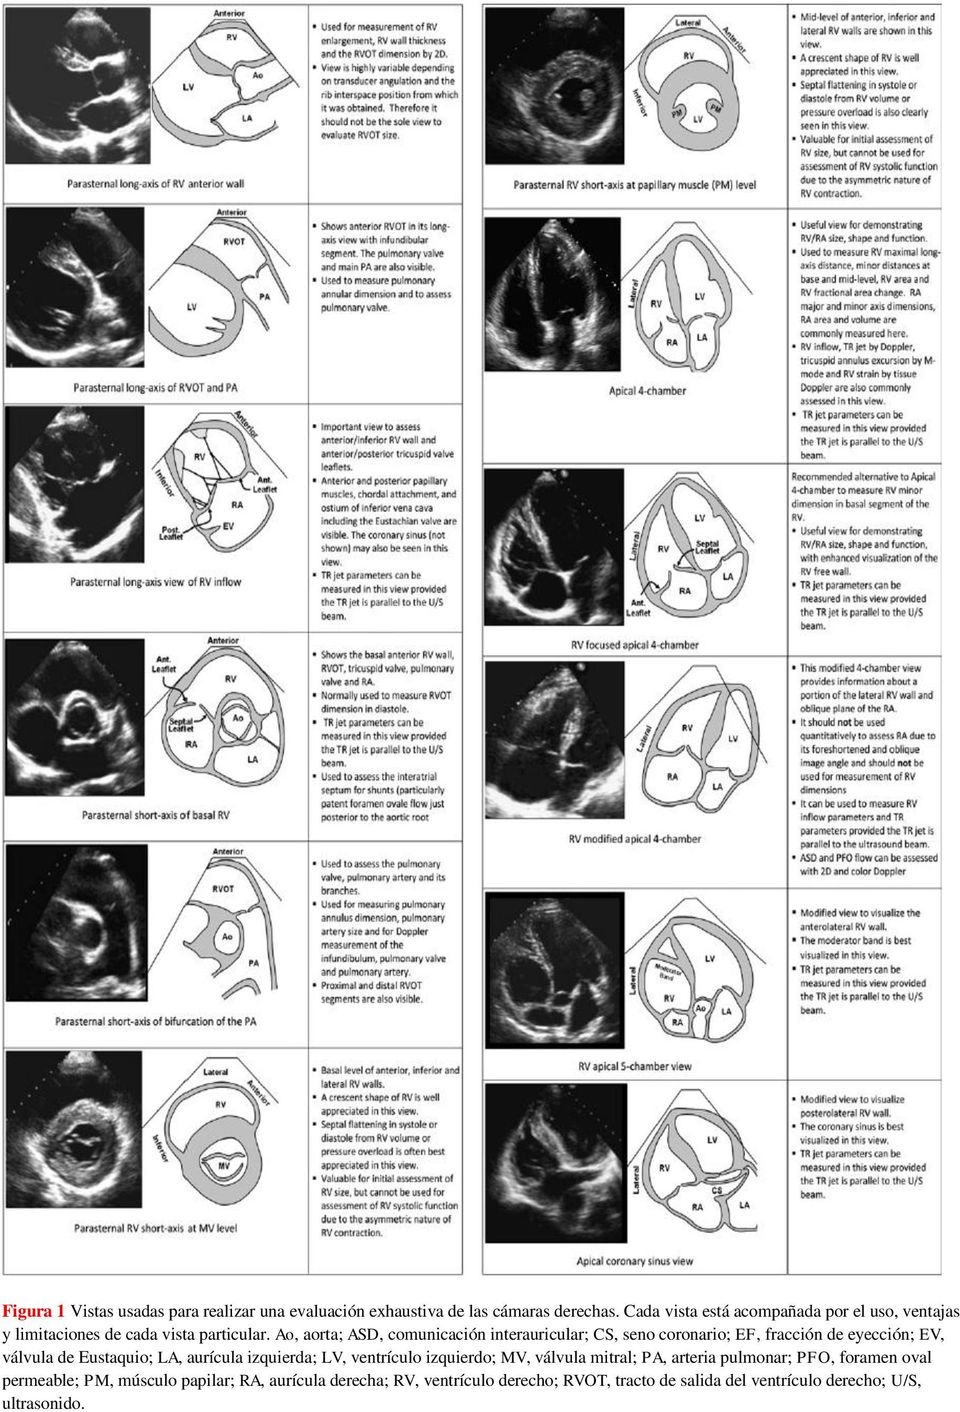 Ao, aorta; ASD, comunicación interauricular; CS, seno coronario; EF, fracción de eyección; EV, válvula de Eustaquio; LA, aurícula